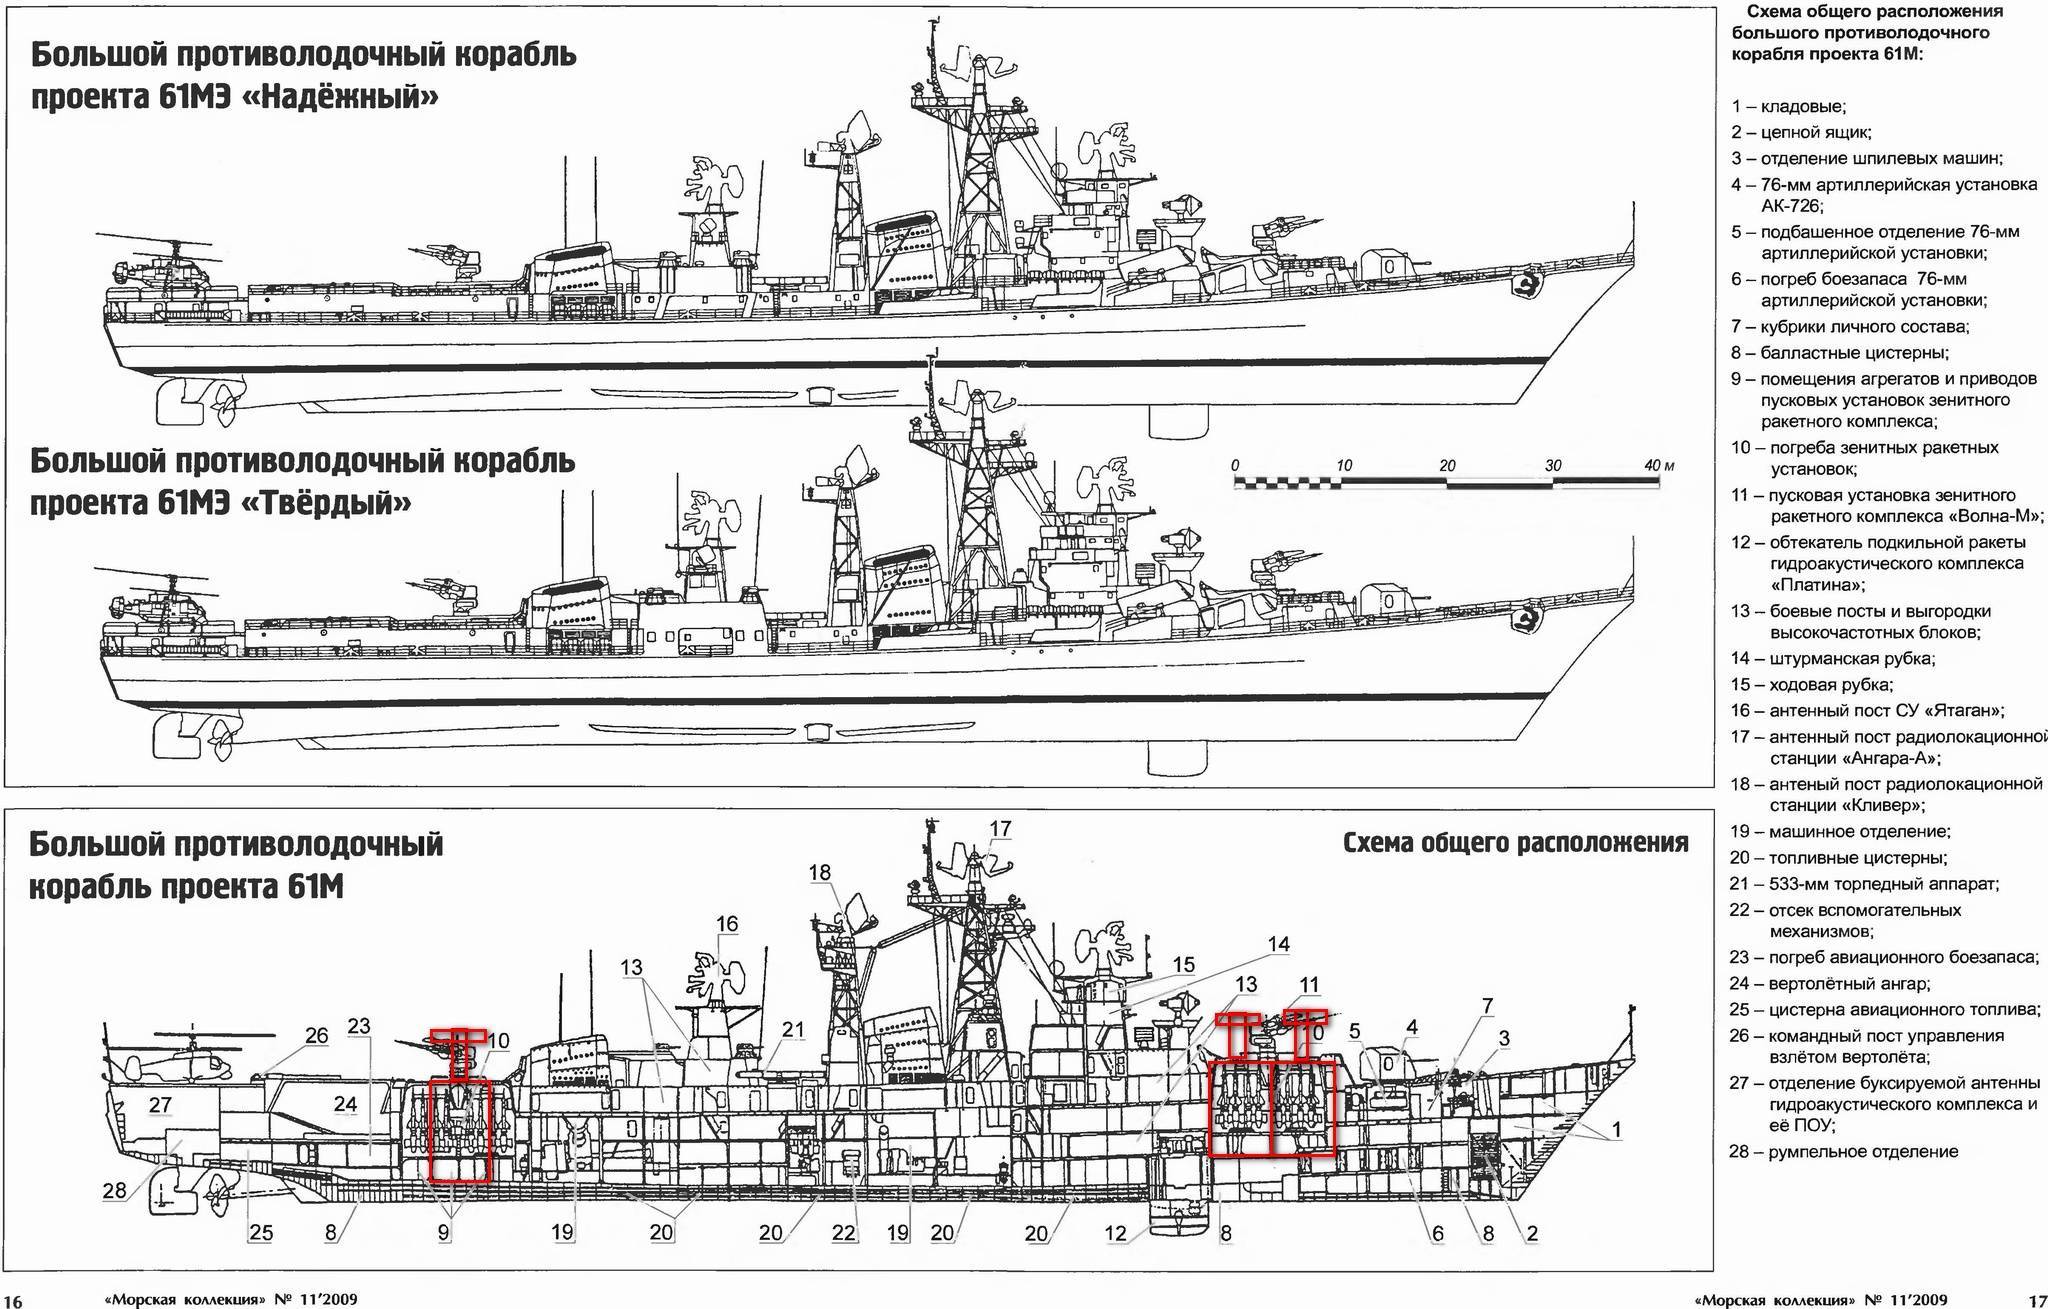 Большие противолодочные корабли проекта 1155.1